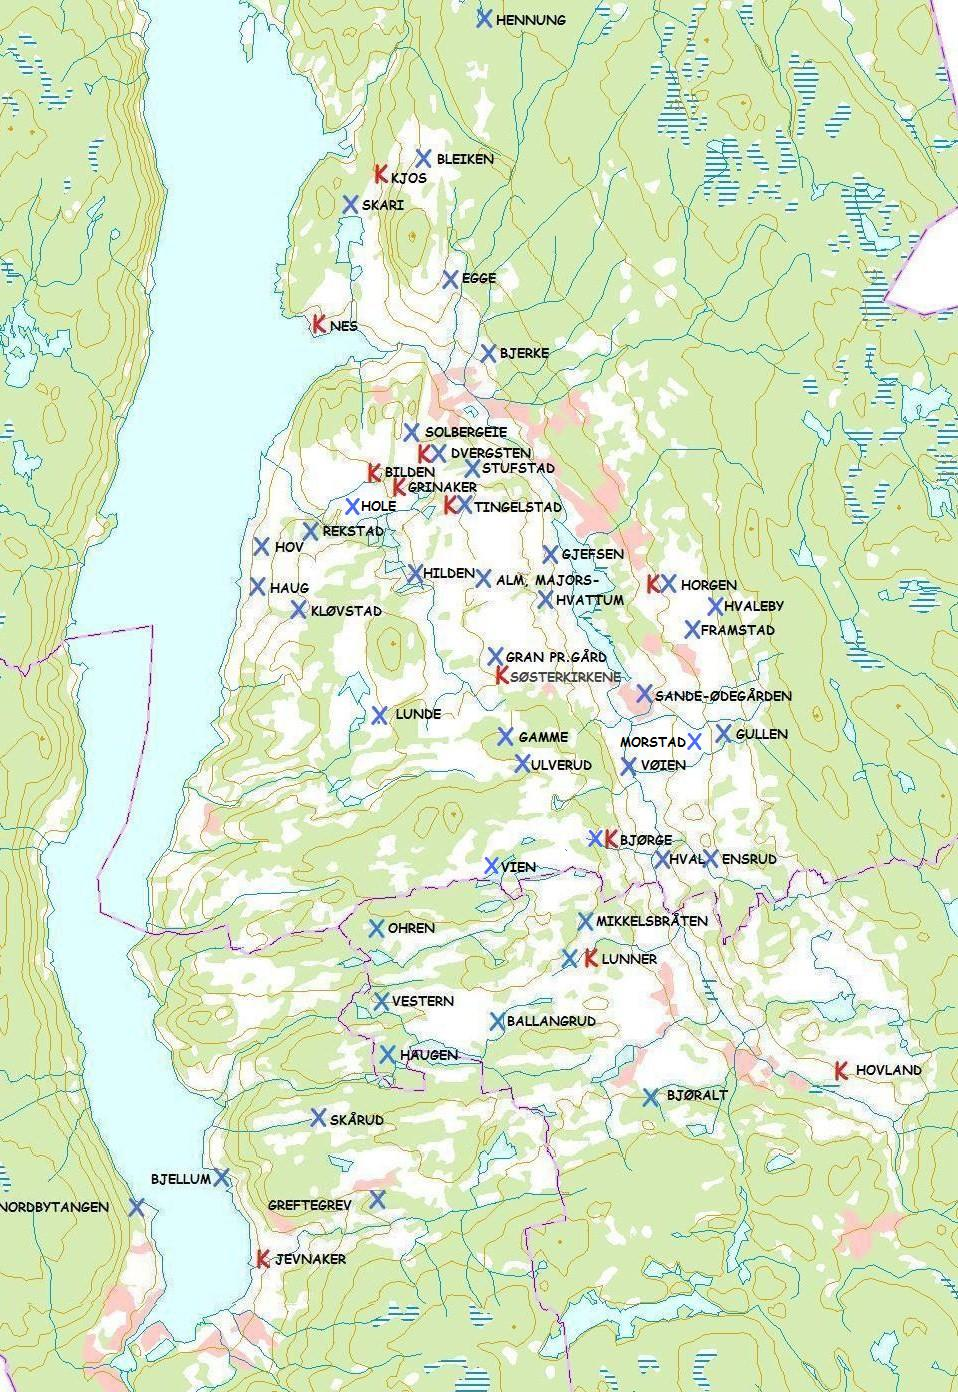 3.1.5 Analyse av arkeologisk materiale Kilde Norge Digitalt Fig. 21 Kirkenes plassering i landskapet, og funnsted for statusmarkører. X = funnsted for statusmarkører, K= kirkested.